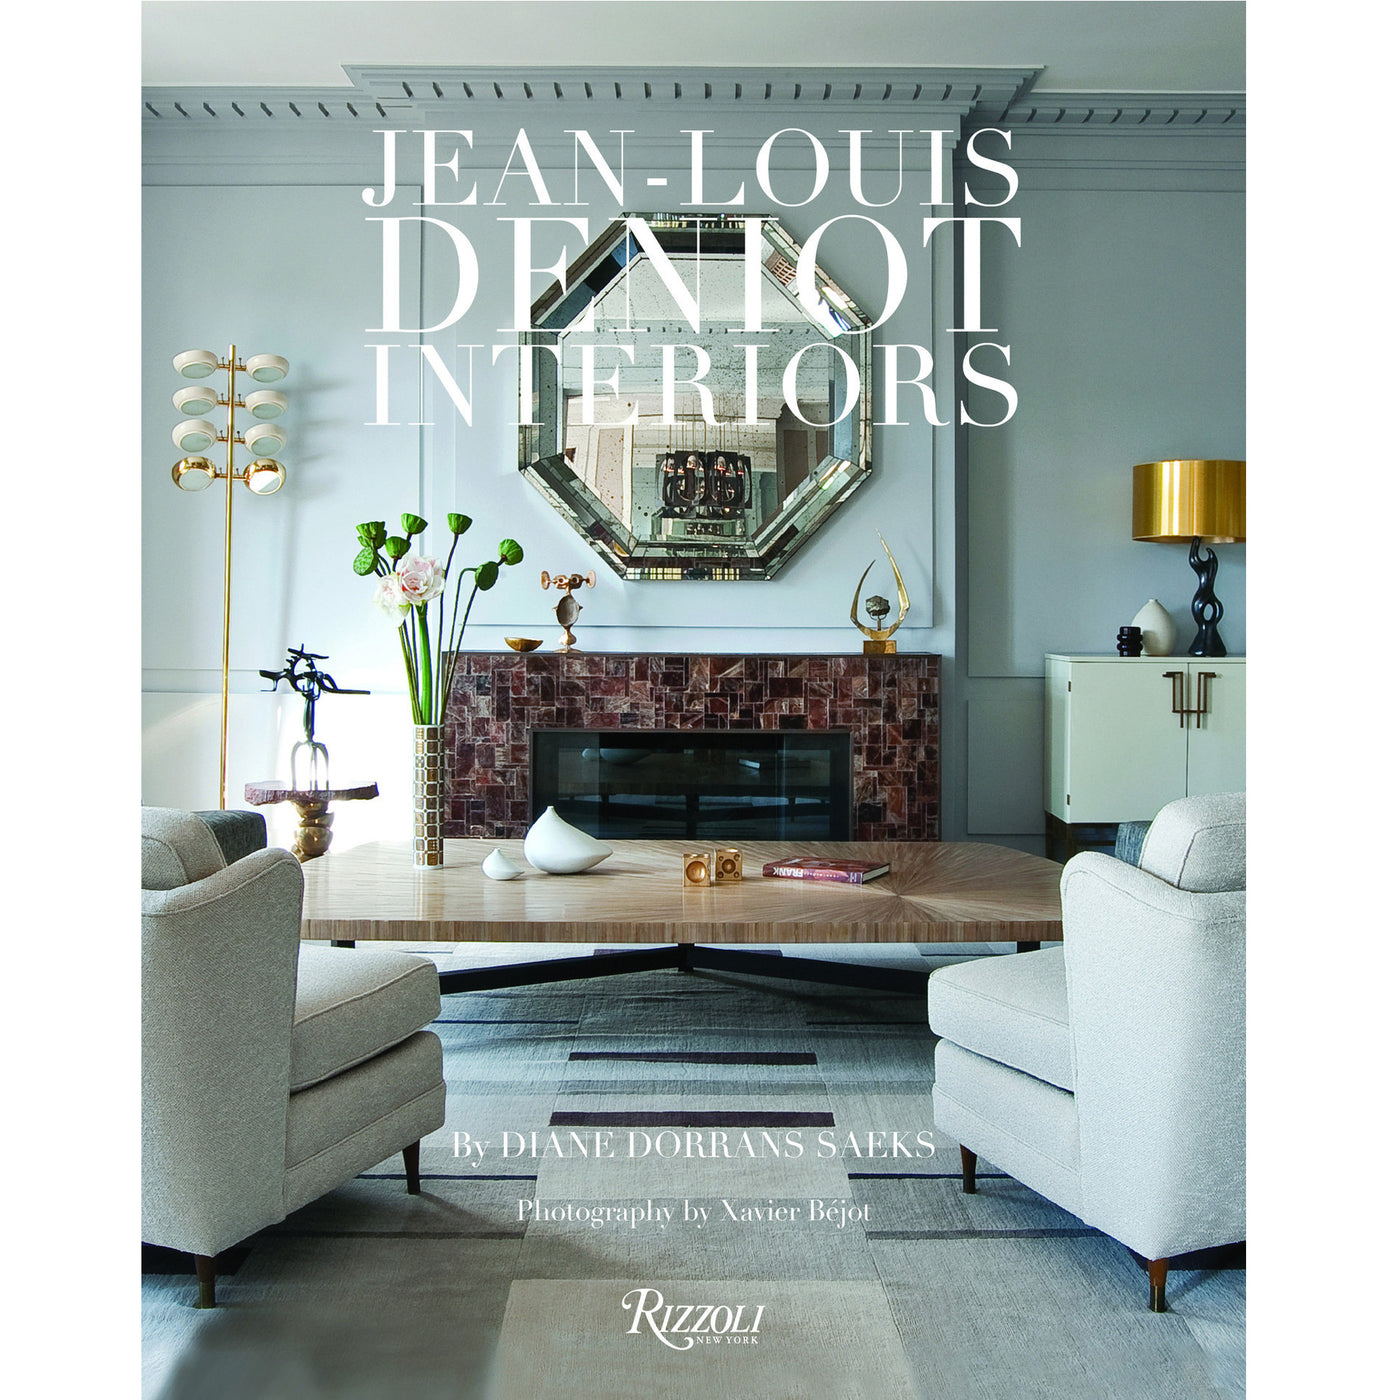 Jean-Louis Deniot: Interiors - Coffee Table Book - Villa Decor Design & Style